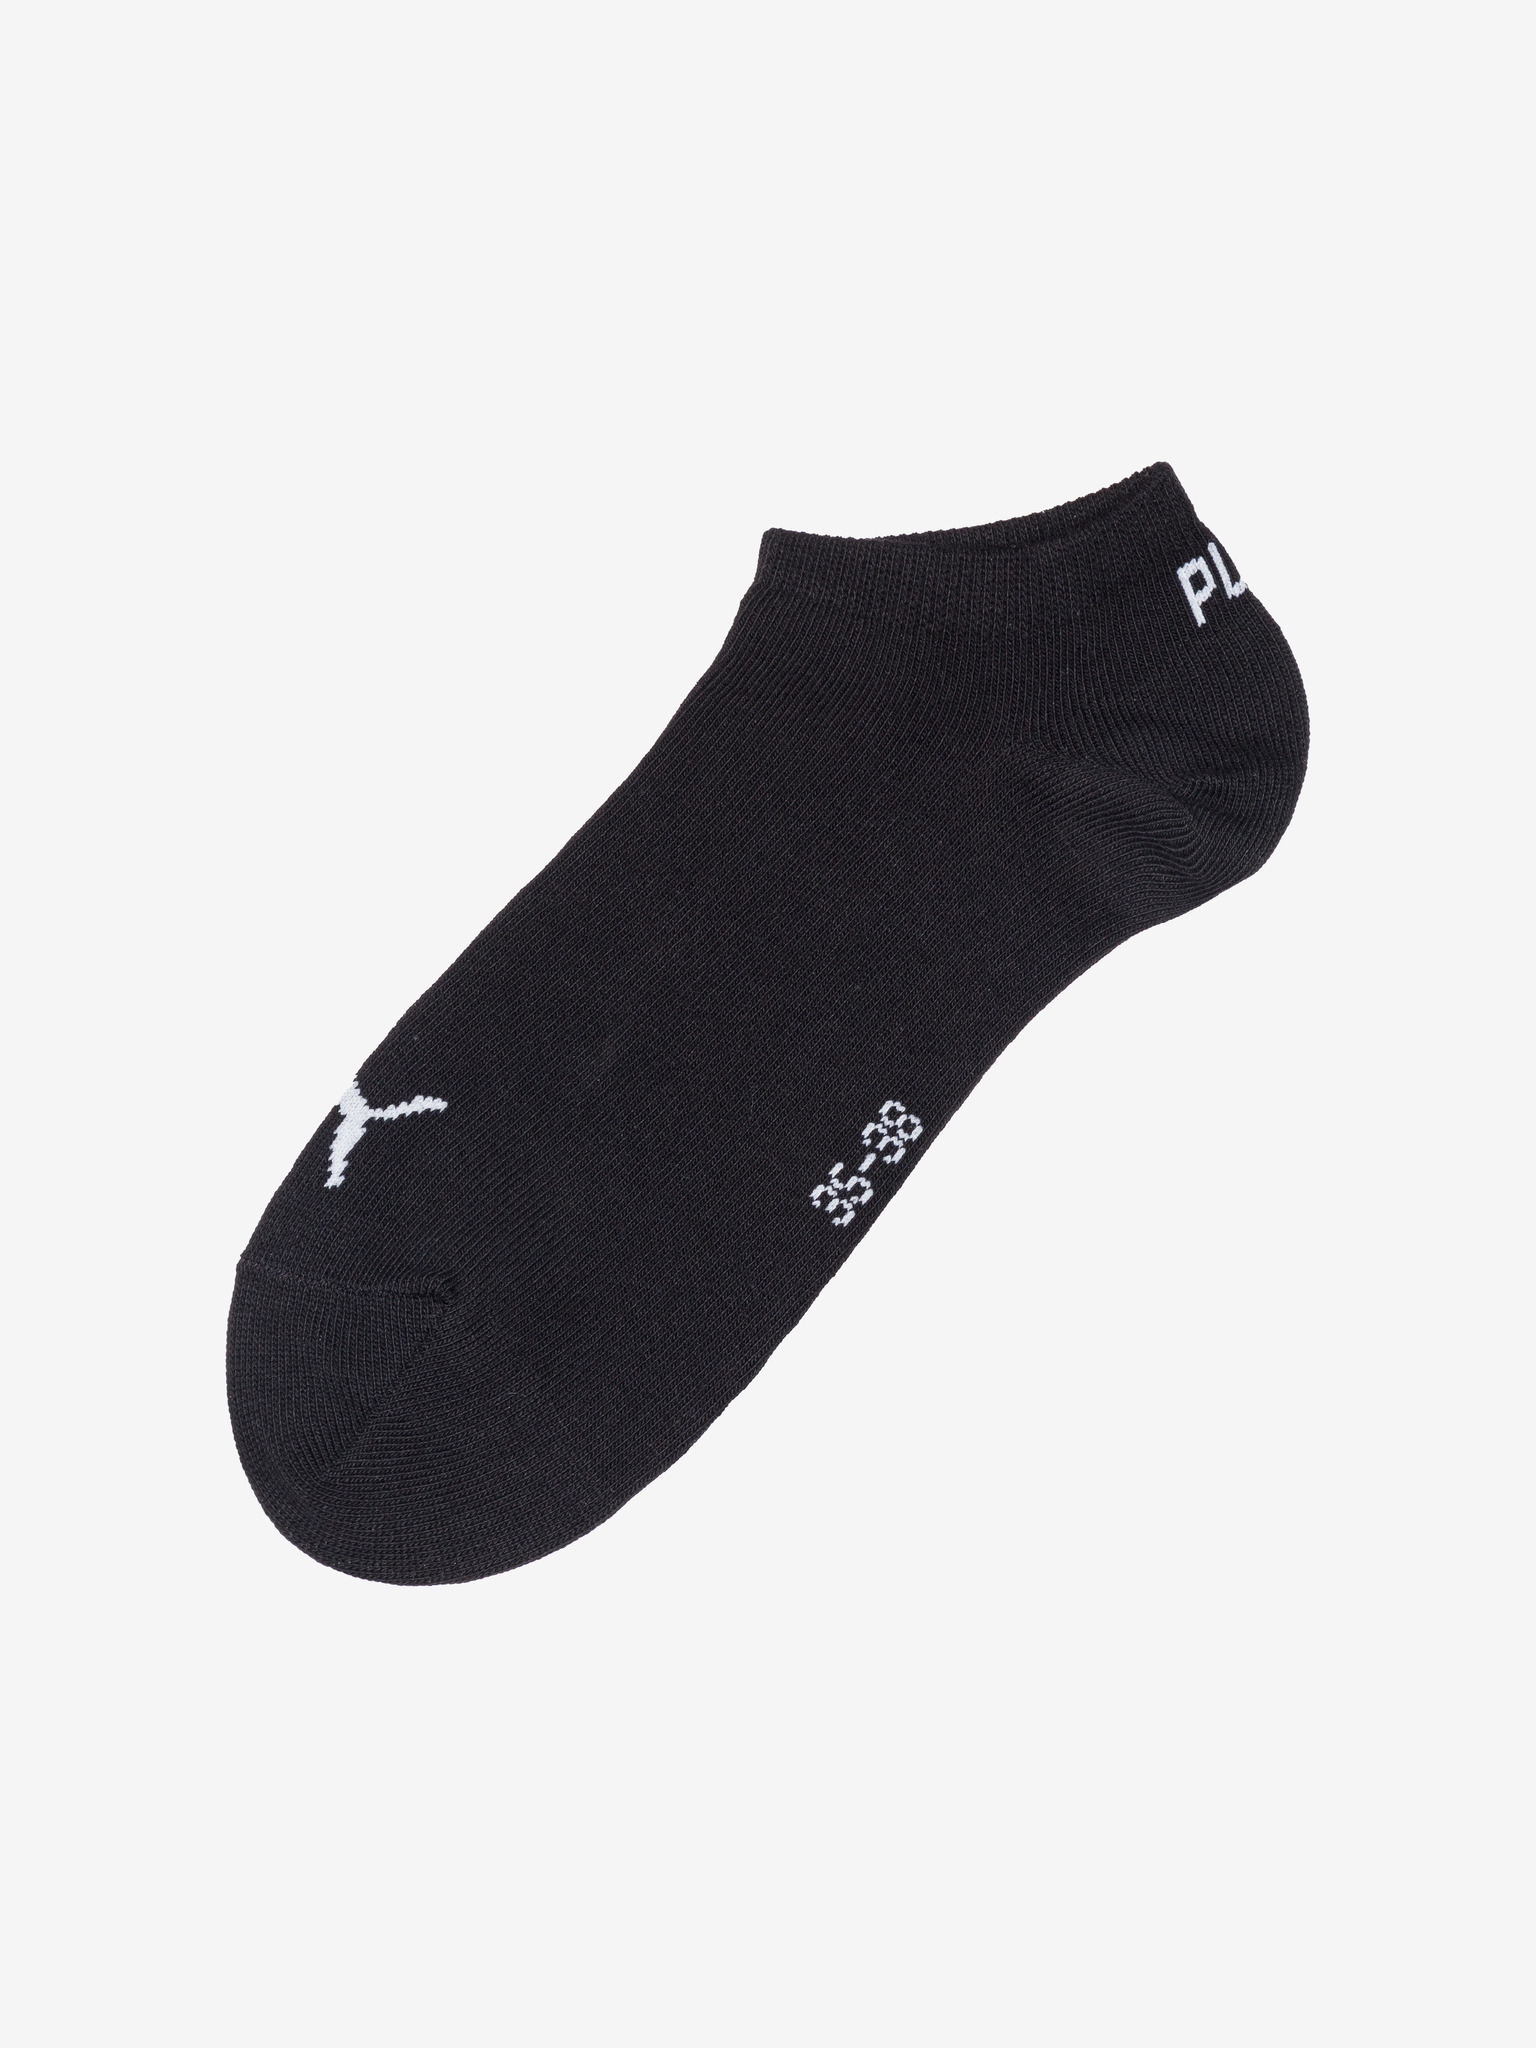 puma socks set of 3